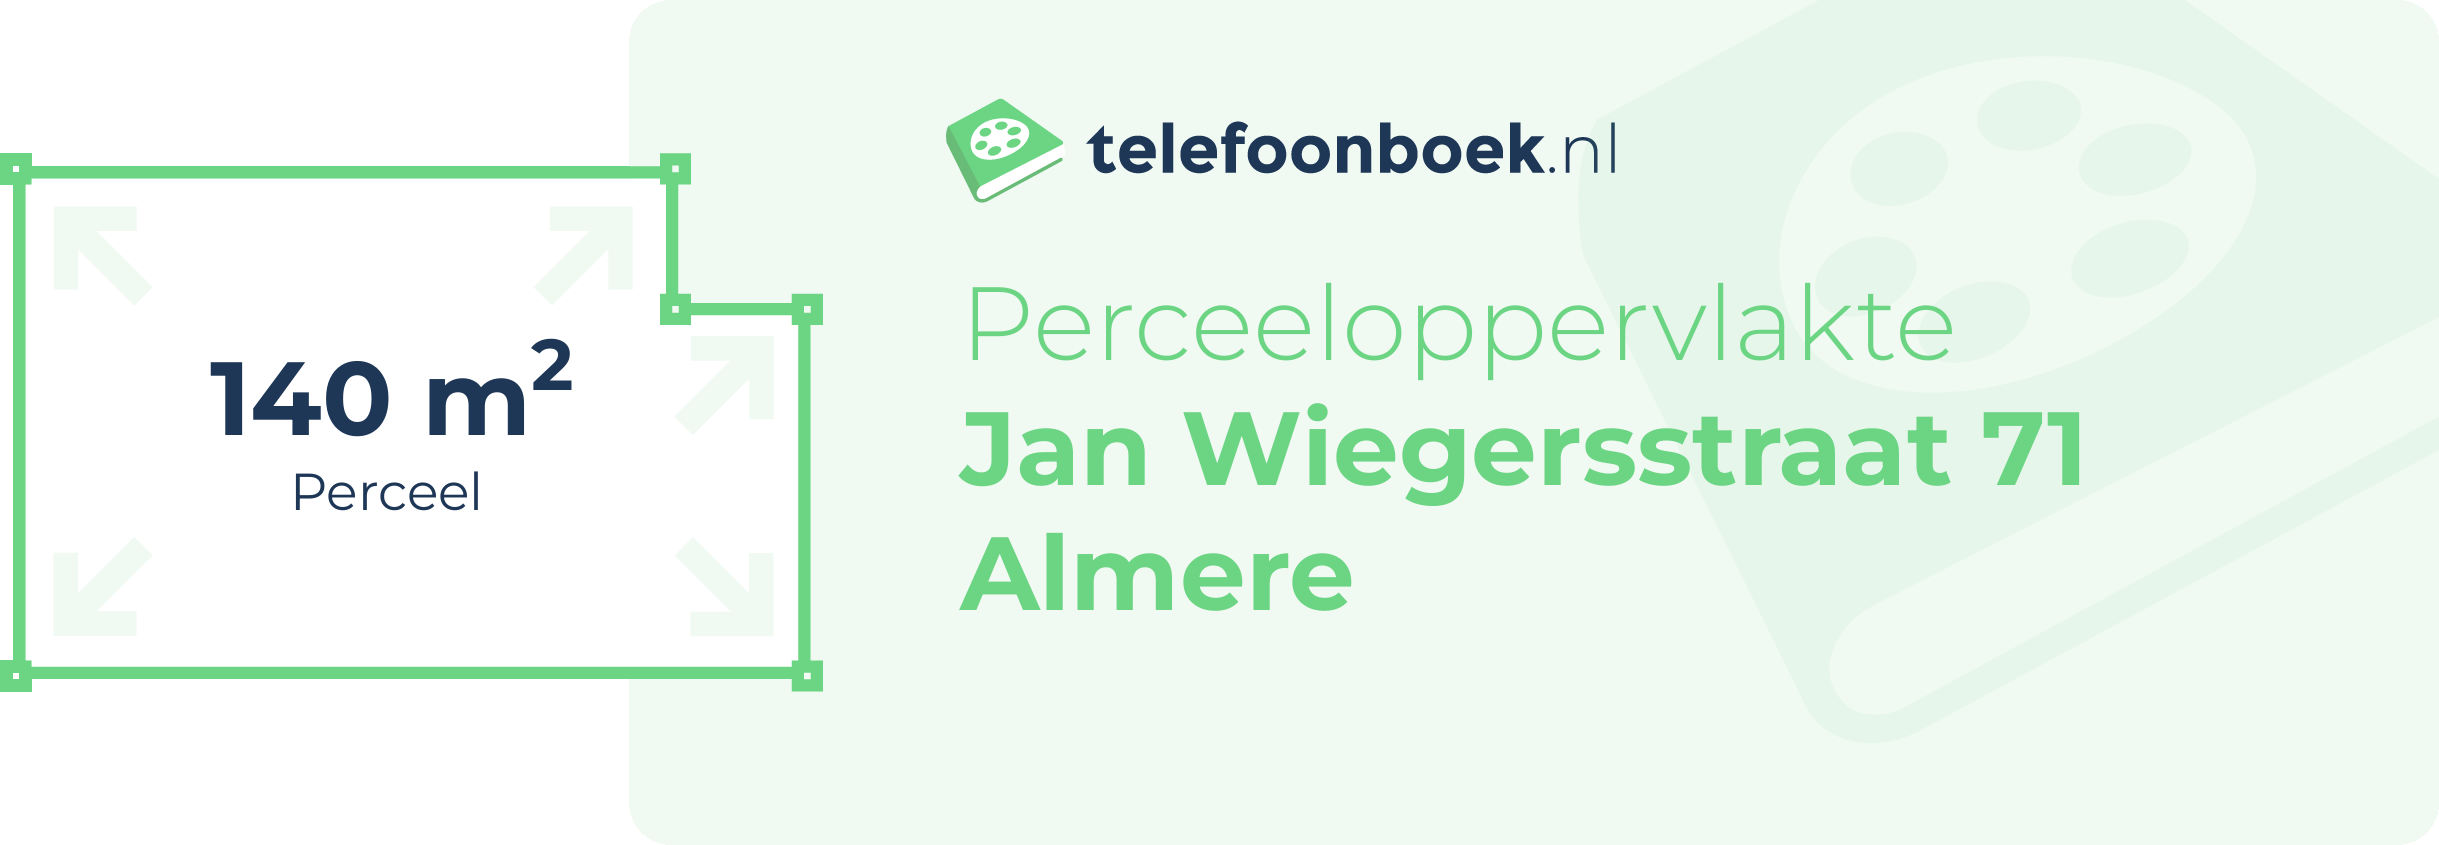 Perceeloppervlakte Jan Wiegersstraat 71 Almere